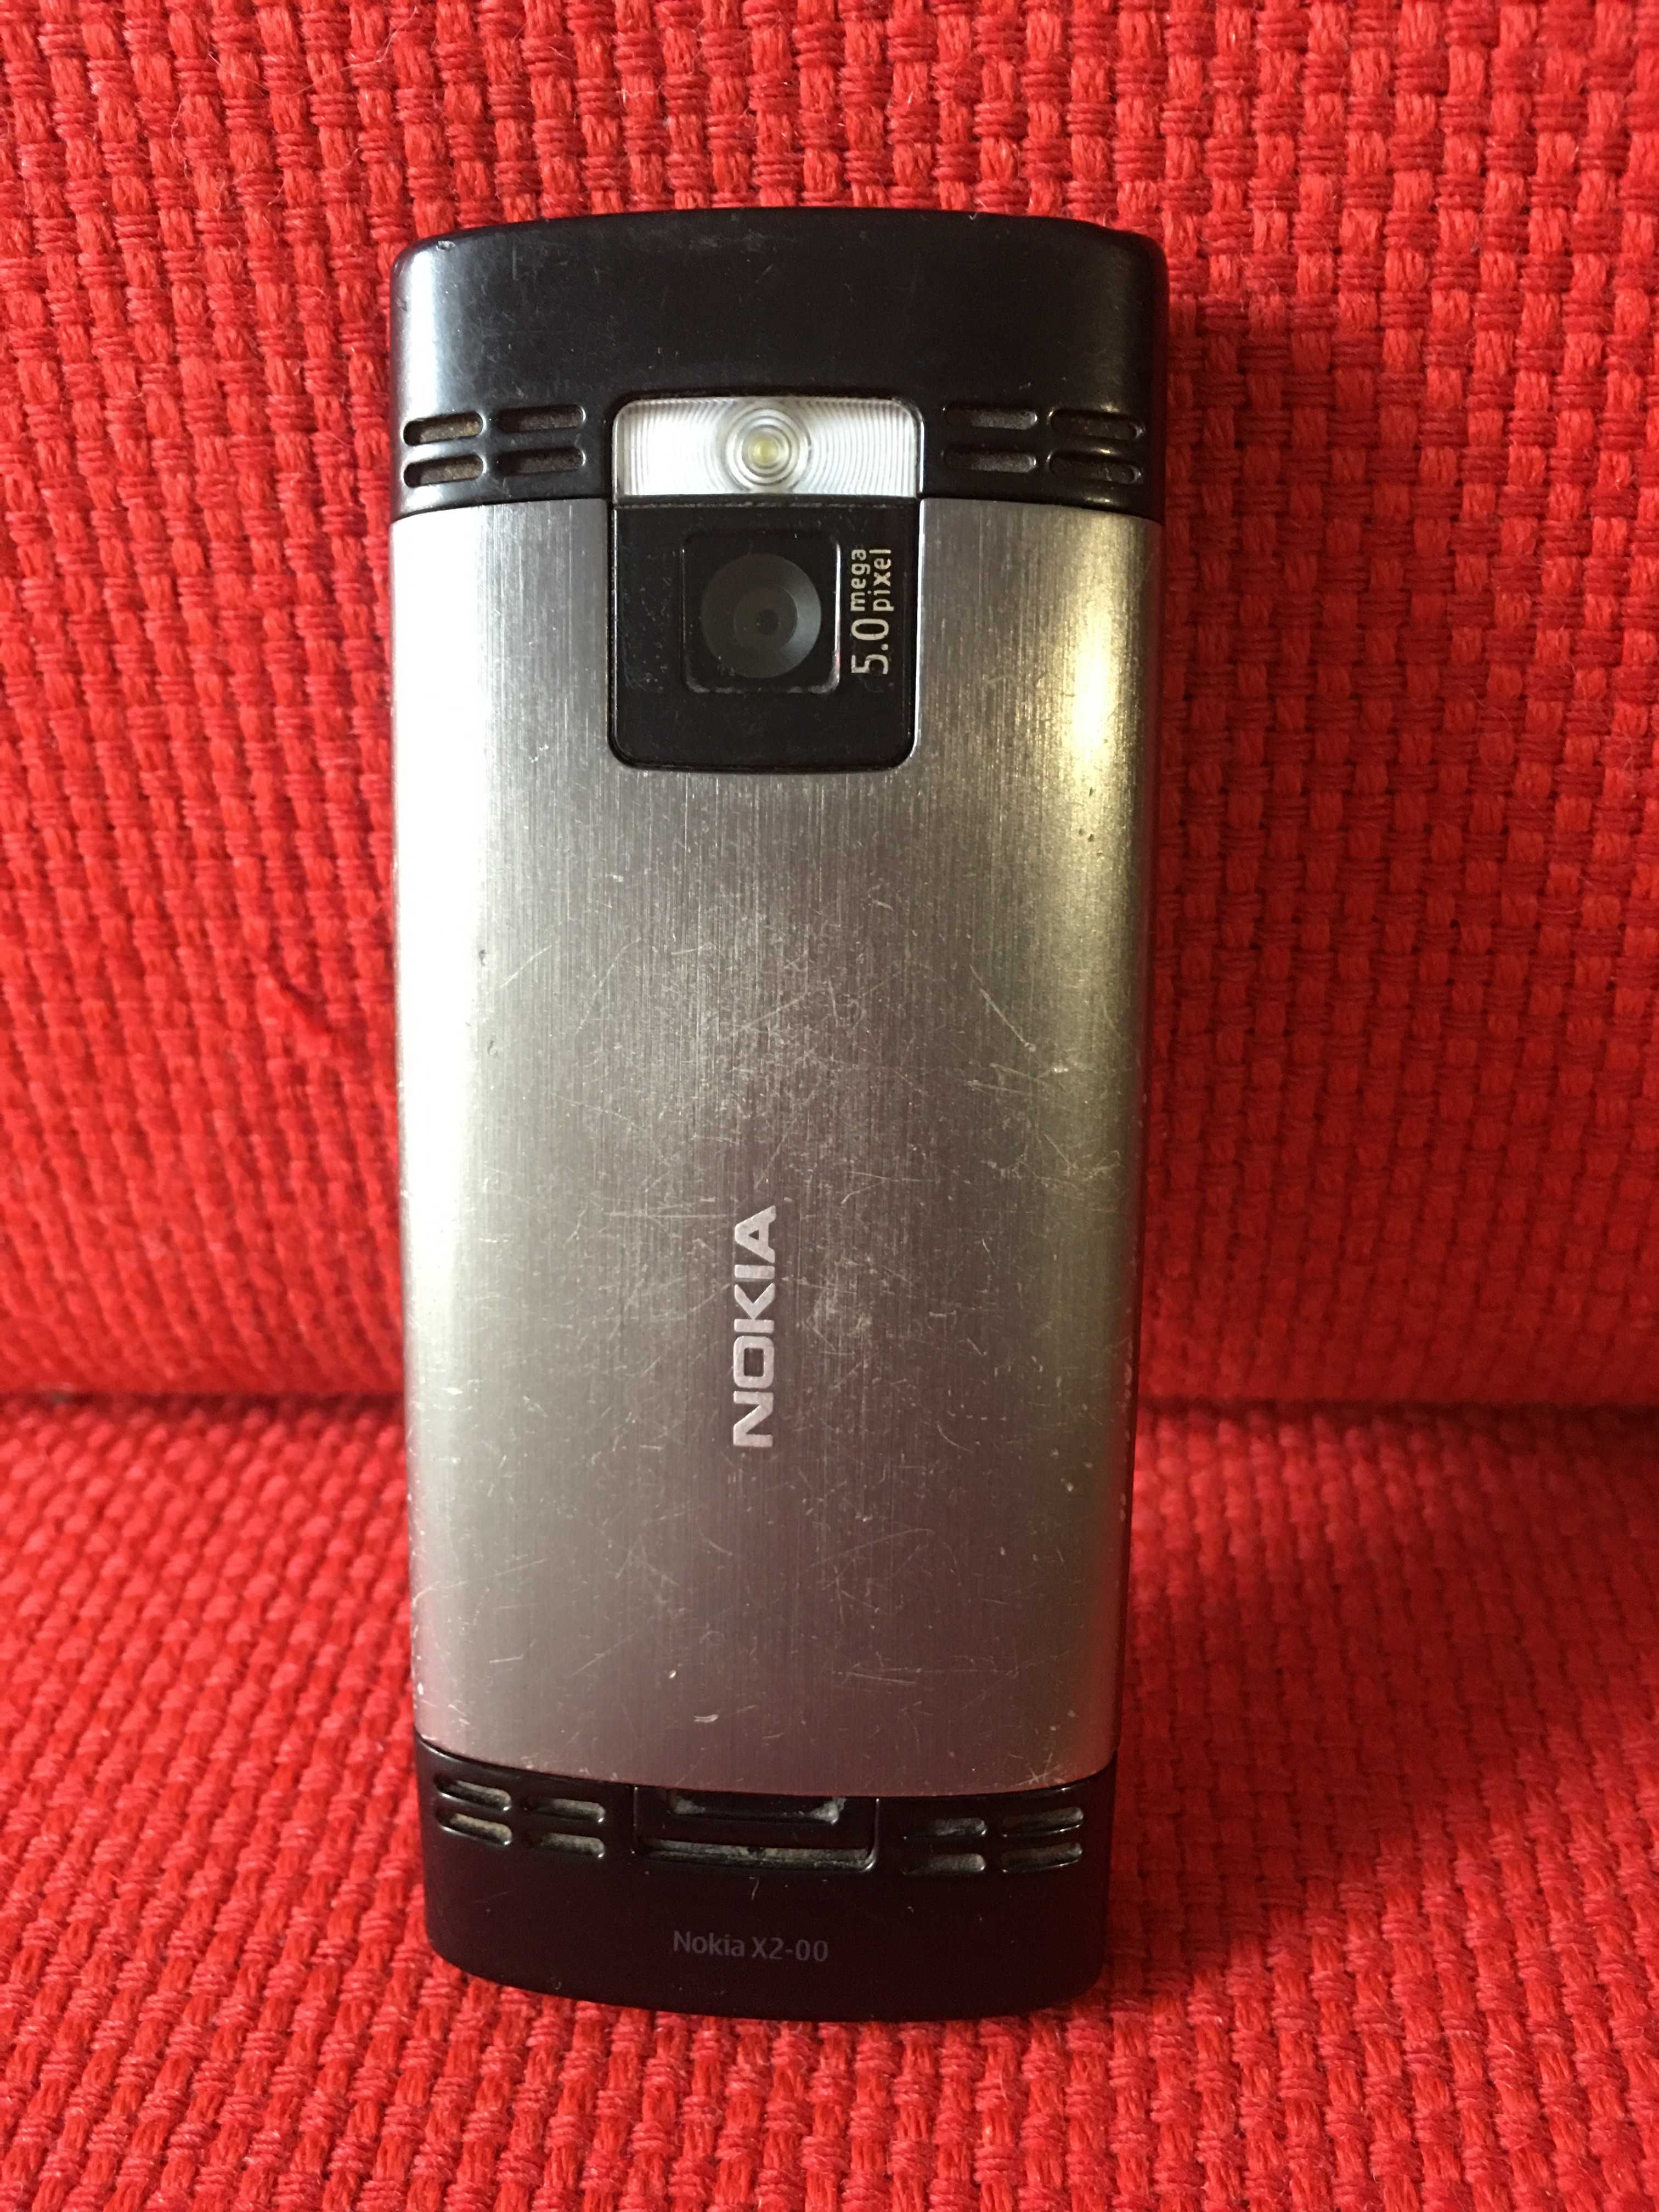 Мобильный телефон Nokia X2-00 требует замены батареи с зарядкой